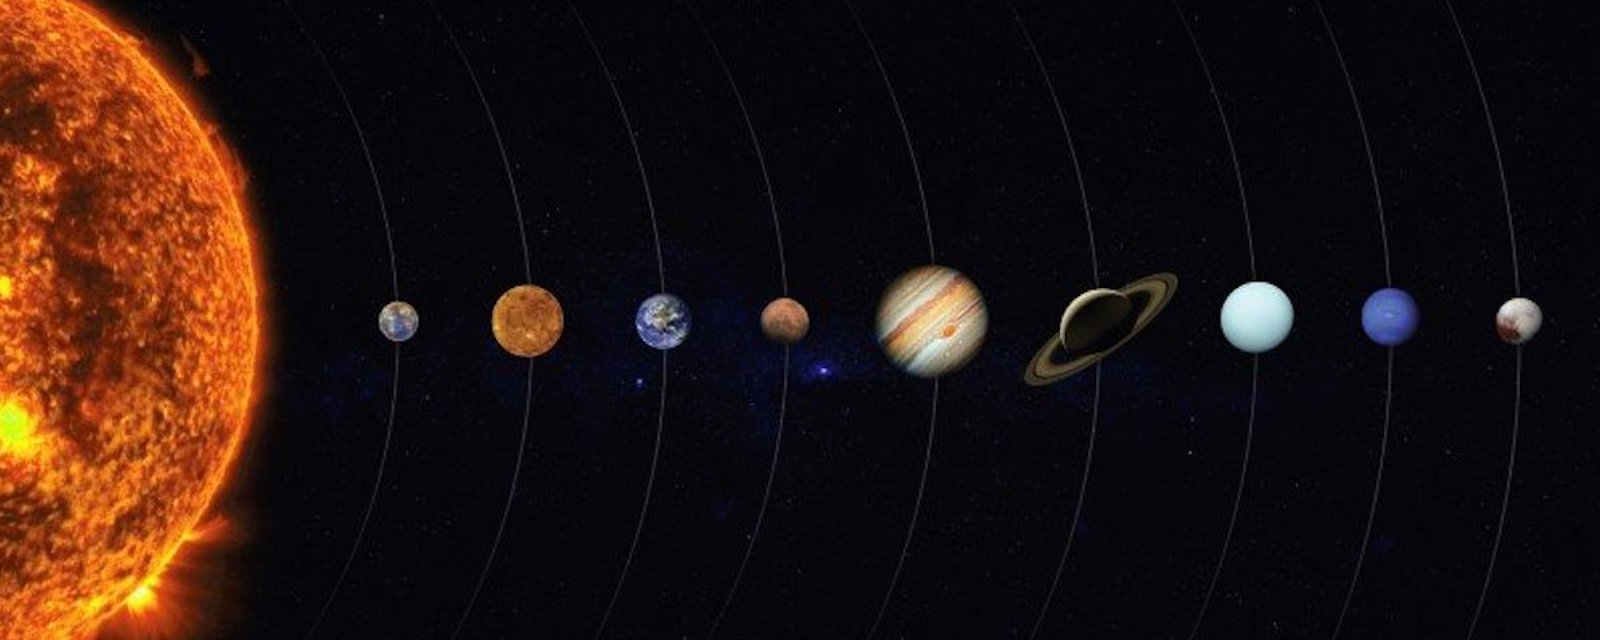 En juin, nous pouvons observer ces 5 planètes à l’oeil nu, dans un alignement exceptionnel